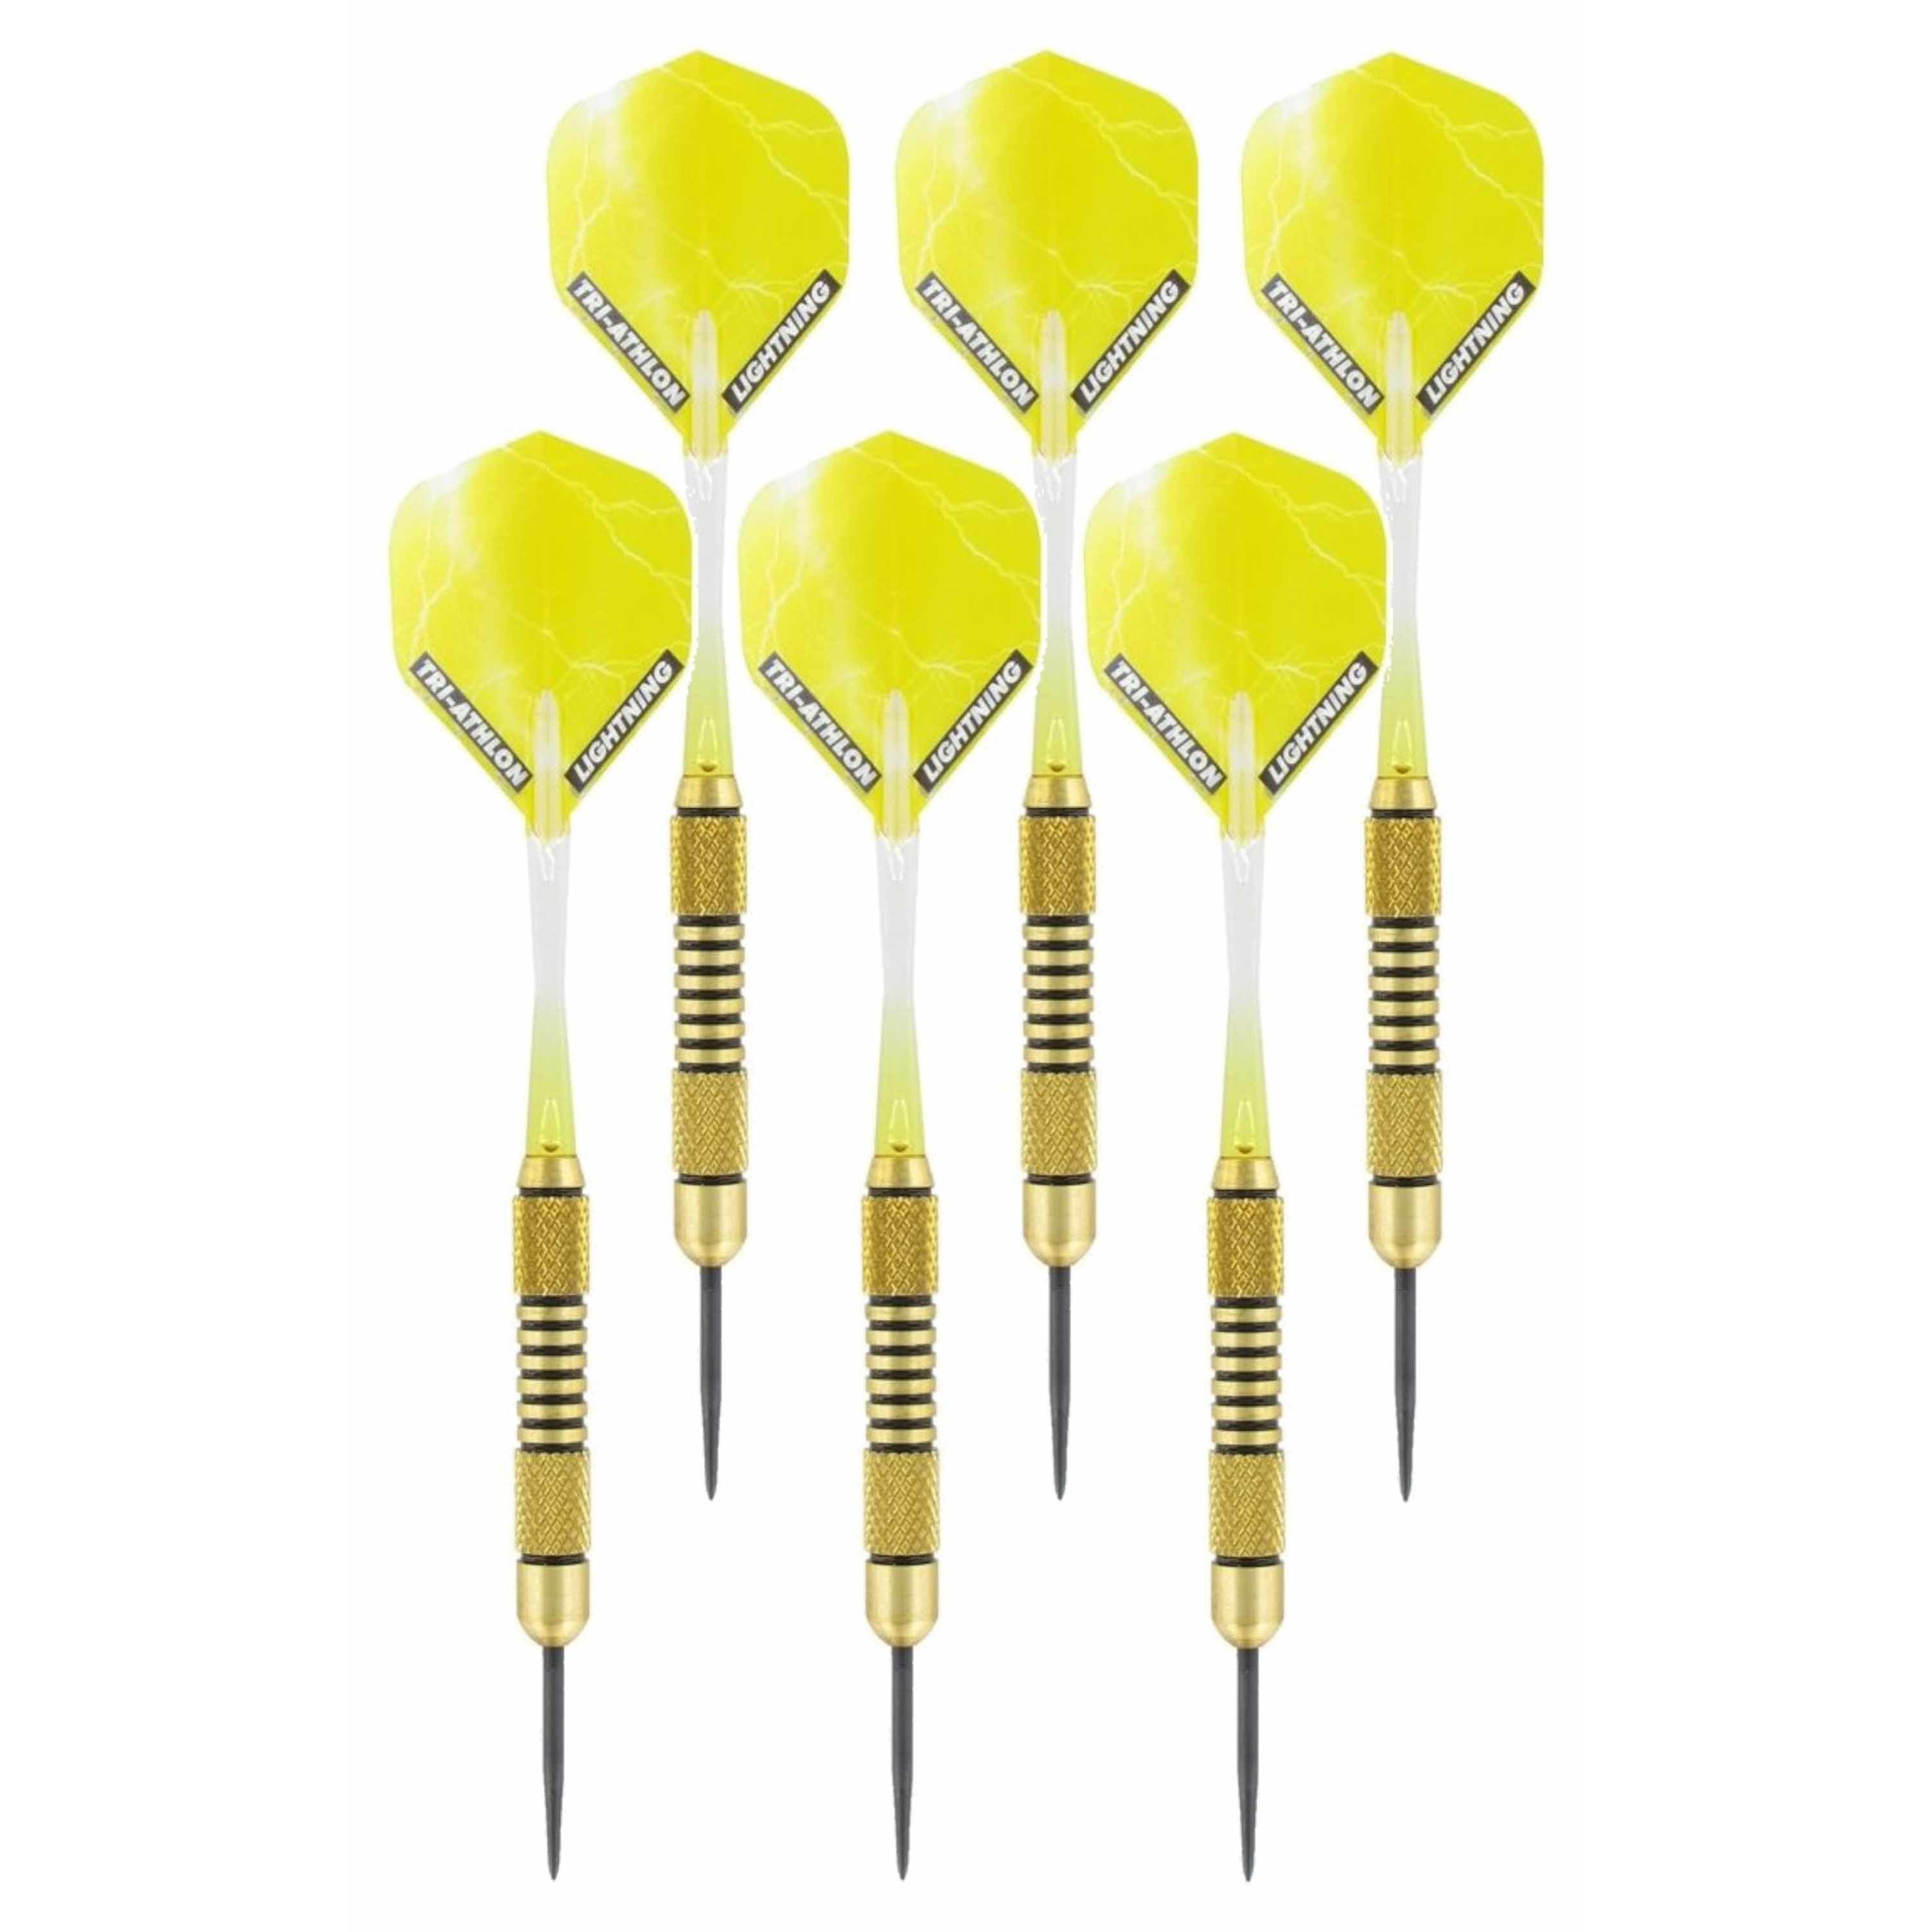 4x Set van dartpijltjes Speedy Yellow Brass met Metallic Lightning flites 19 grams